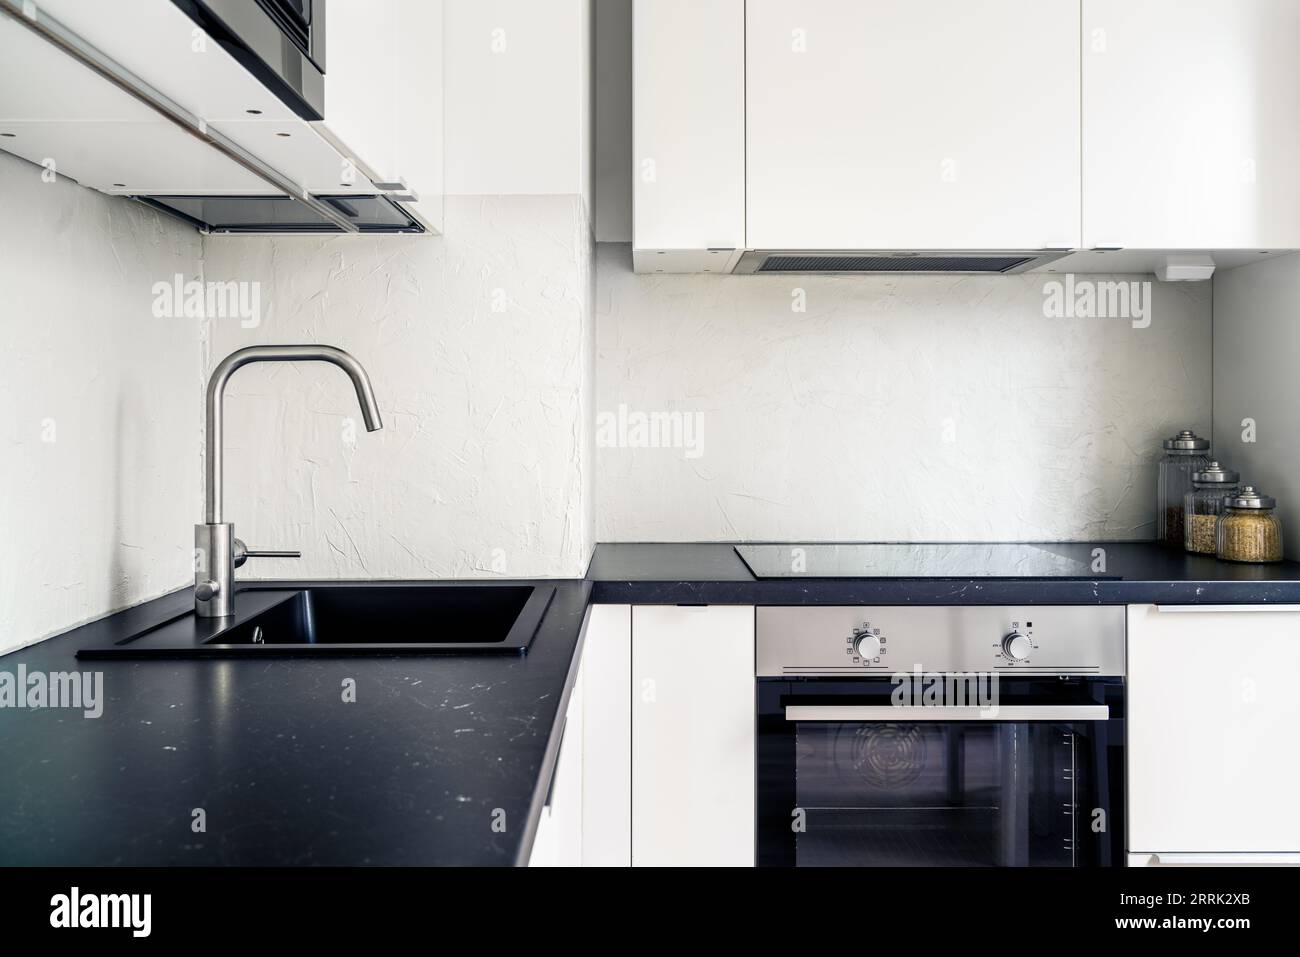 Kücheneinrichtung. Modernes Design in weiß und Schwarz. Skandinavischer minimalistischer Lebensstil. Induktionskocher und Herd, Elektroofen in neuer Wohnung. Stockfoto